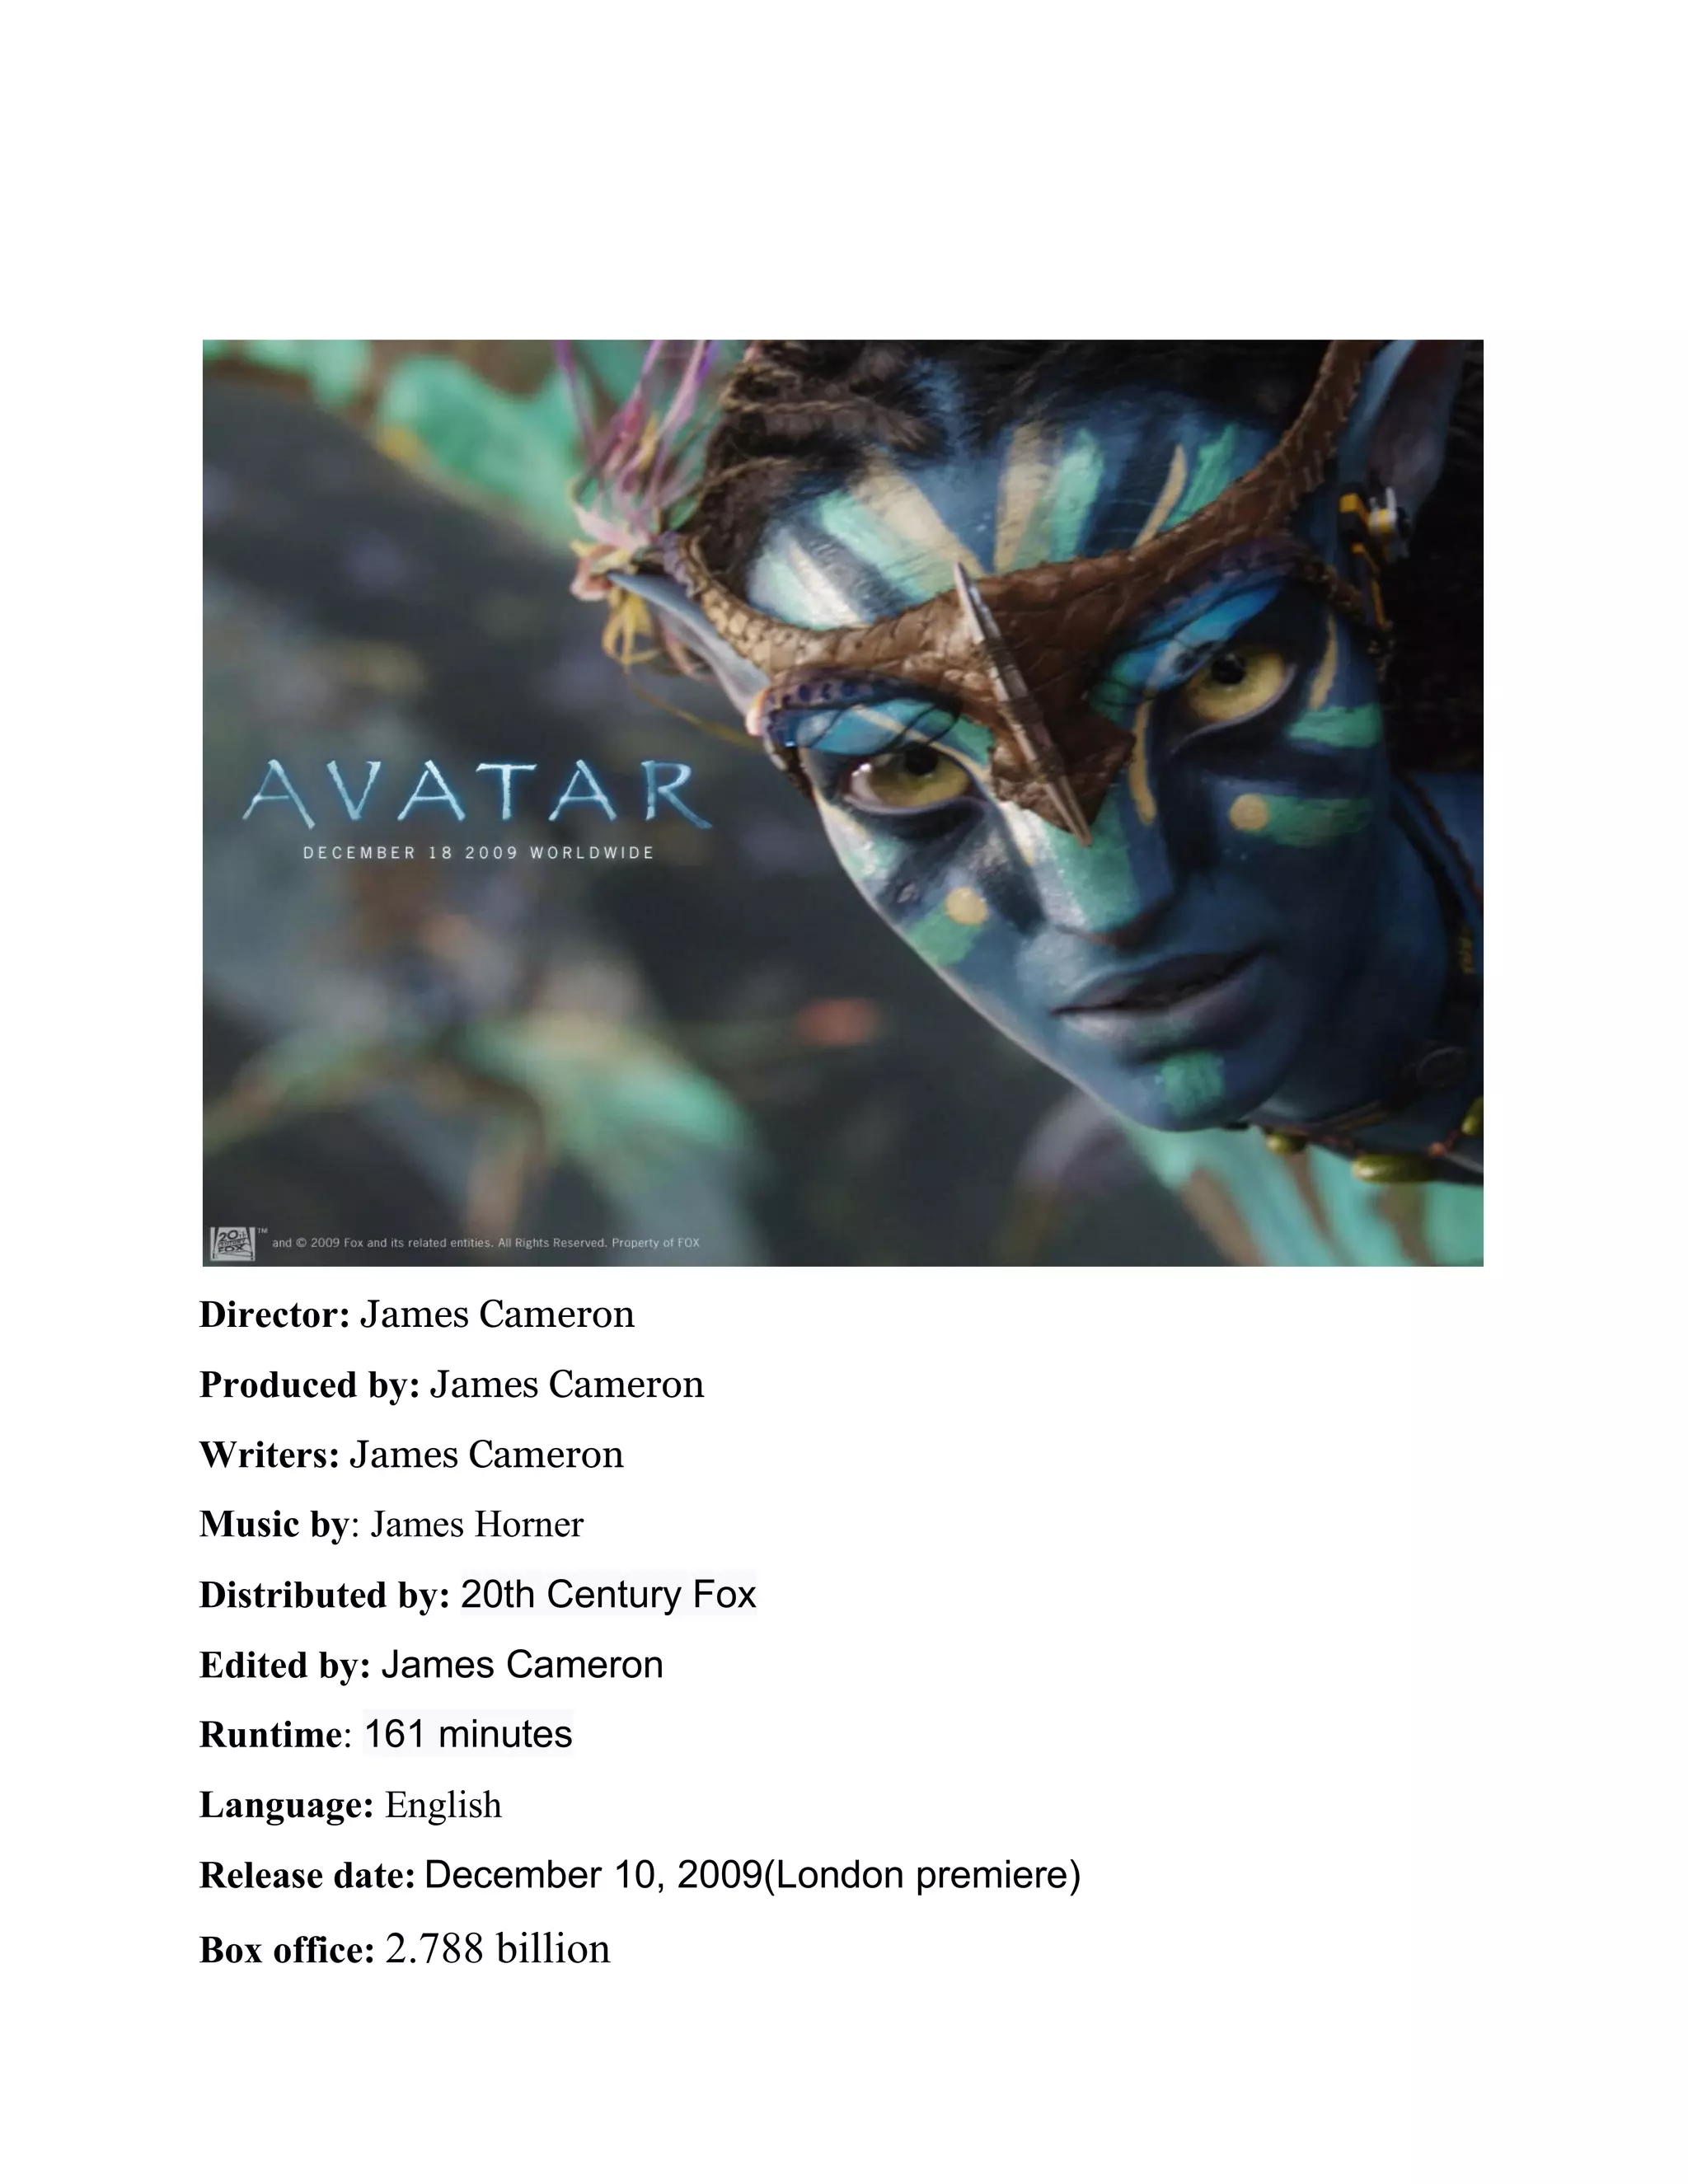 Avatar 2 - Bộ phim đình đám này đã trở lại với phần tiếp theo đầy hứa hẹn. Với công nghệ điện ảnh tiên tiến hơn, Avatar 2 sẽ đưa khán giả đến một thế giới hoàn toàn mới, với những sinh vật độc đáo và cảnh quan tuyệt đẹp. Đừng bỏ lỡ cơ hội được trải nghiệm khám phá thế giới Pandora lần thứ hai với Avatar 2!